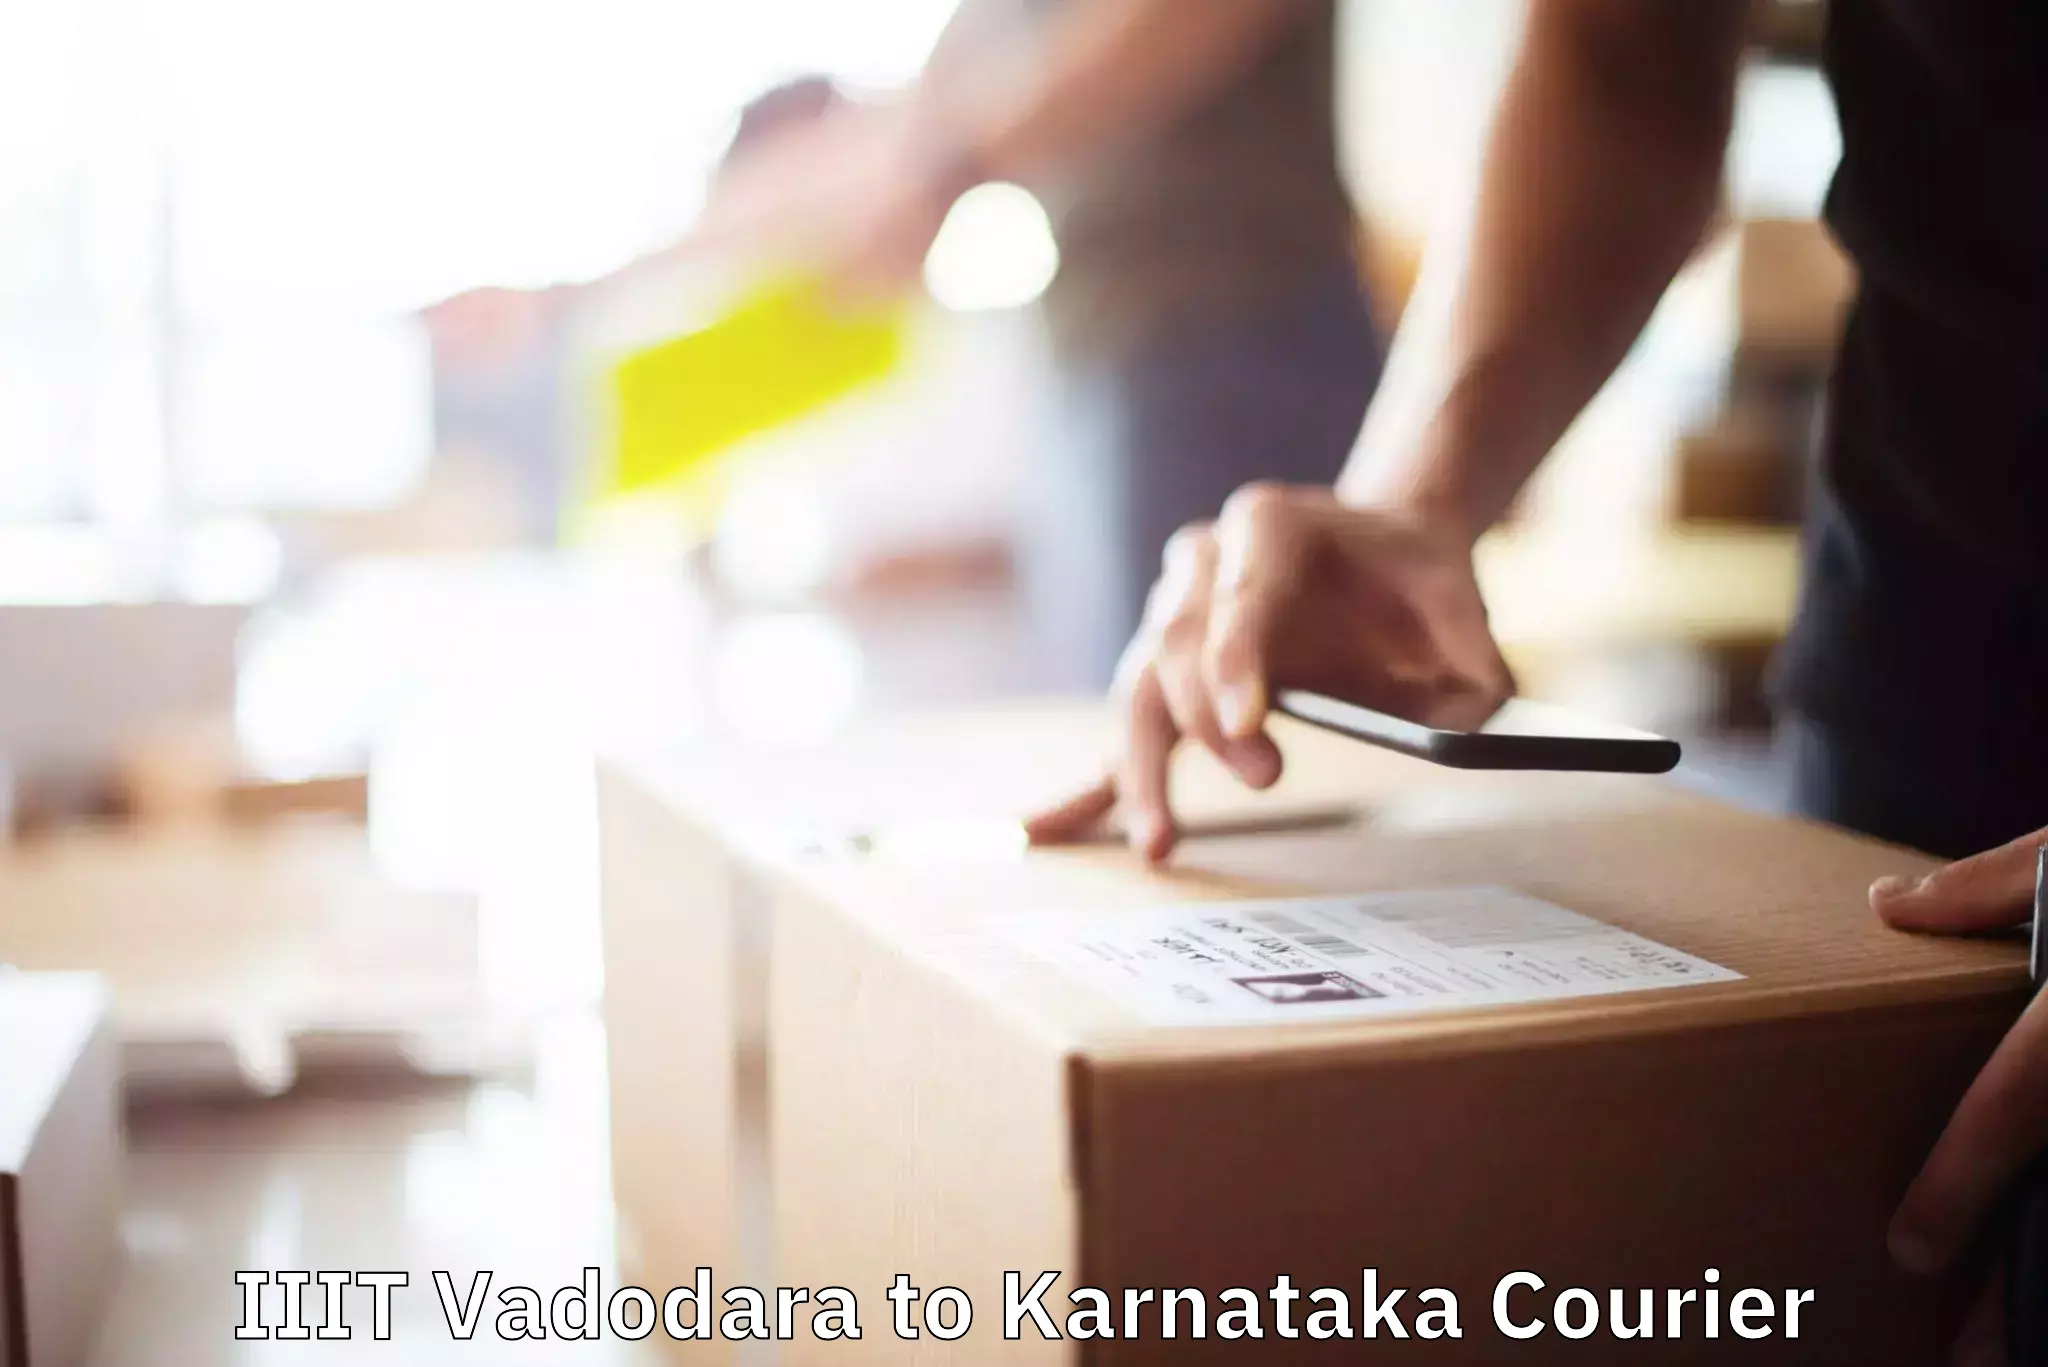 Furniture transport service IIIT Vadodara to Karnataka